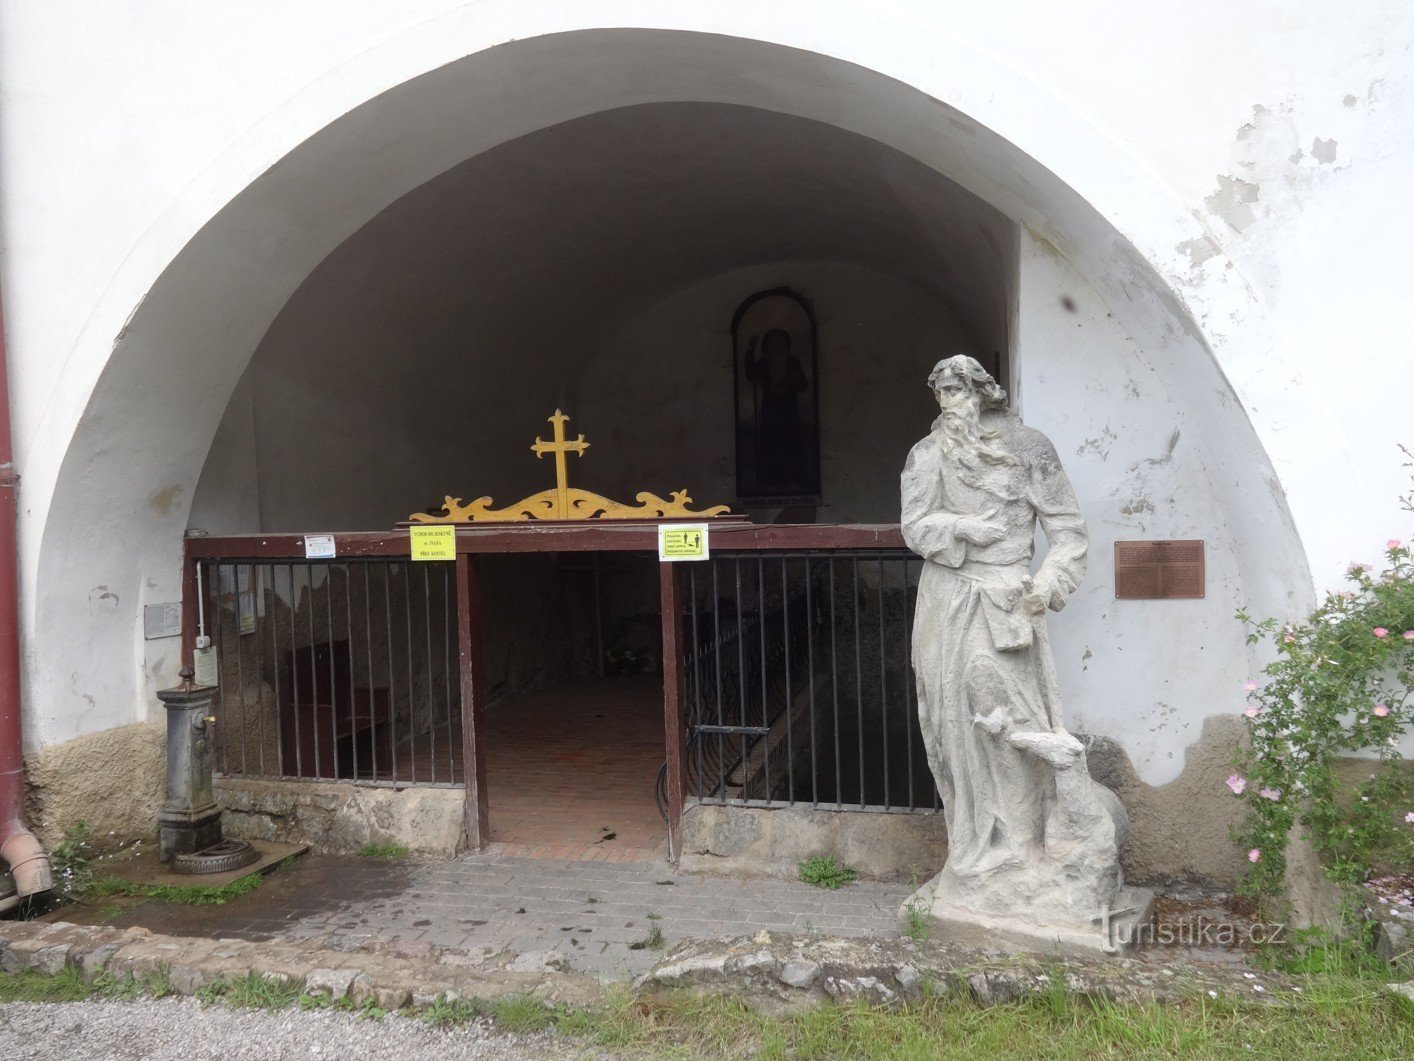 St. Jan pod Skalou e o poço de St. Ivan perto da Igreja da Natividade de St. João Batista